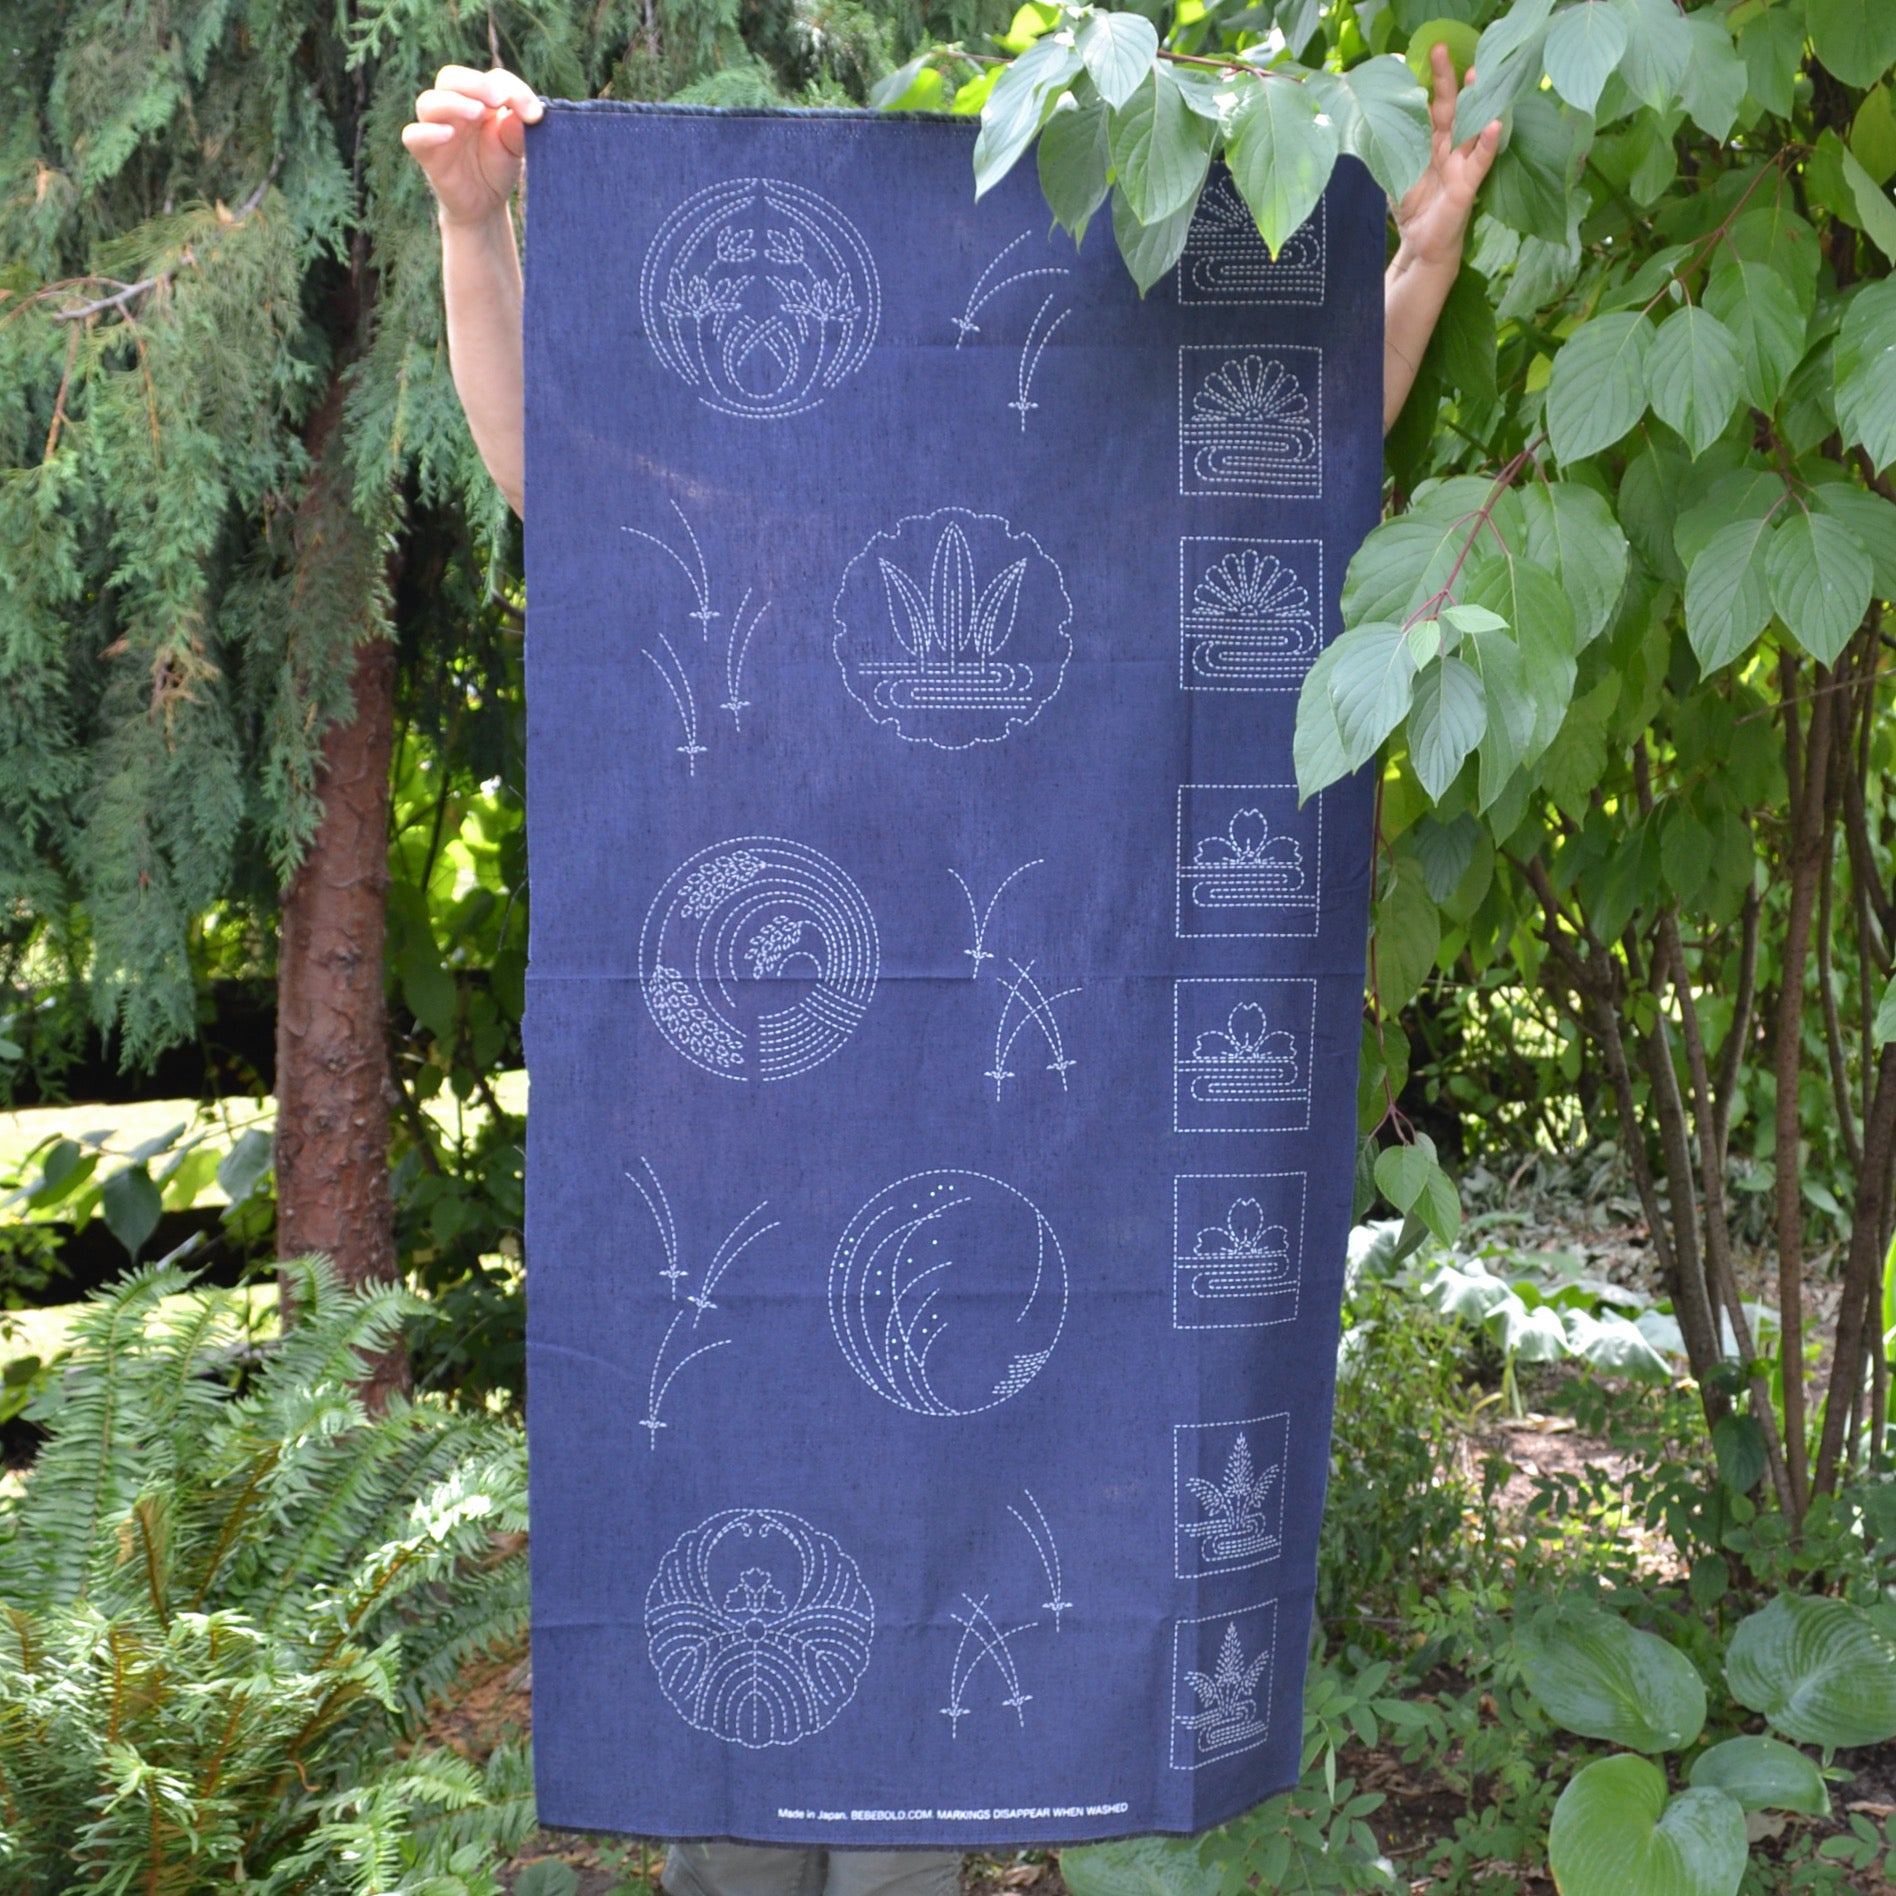 sashiko pre-printed fabric panel